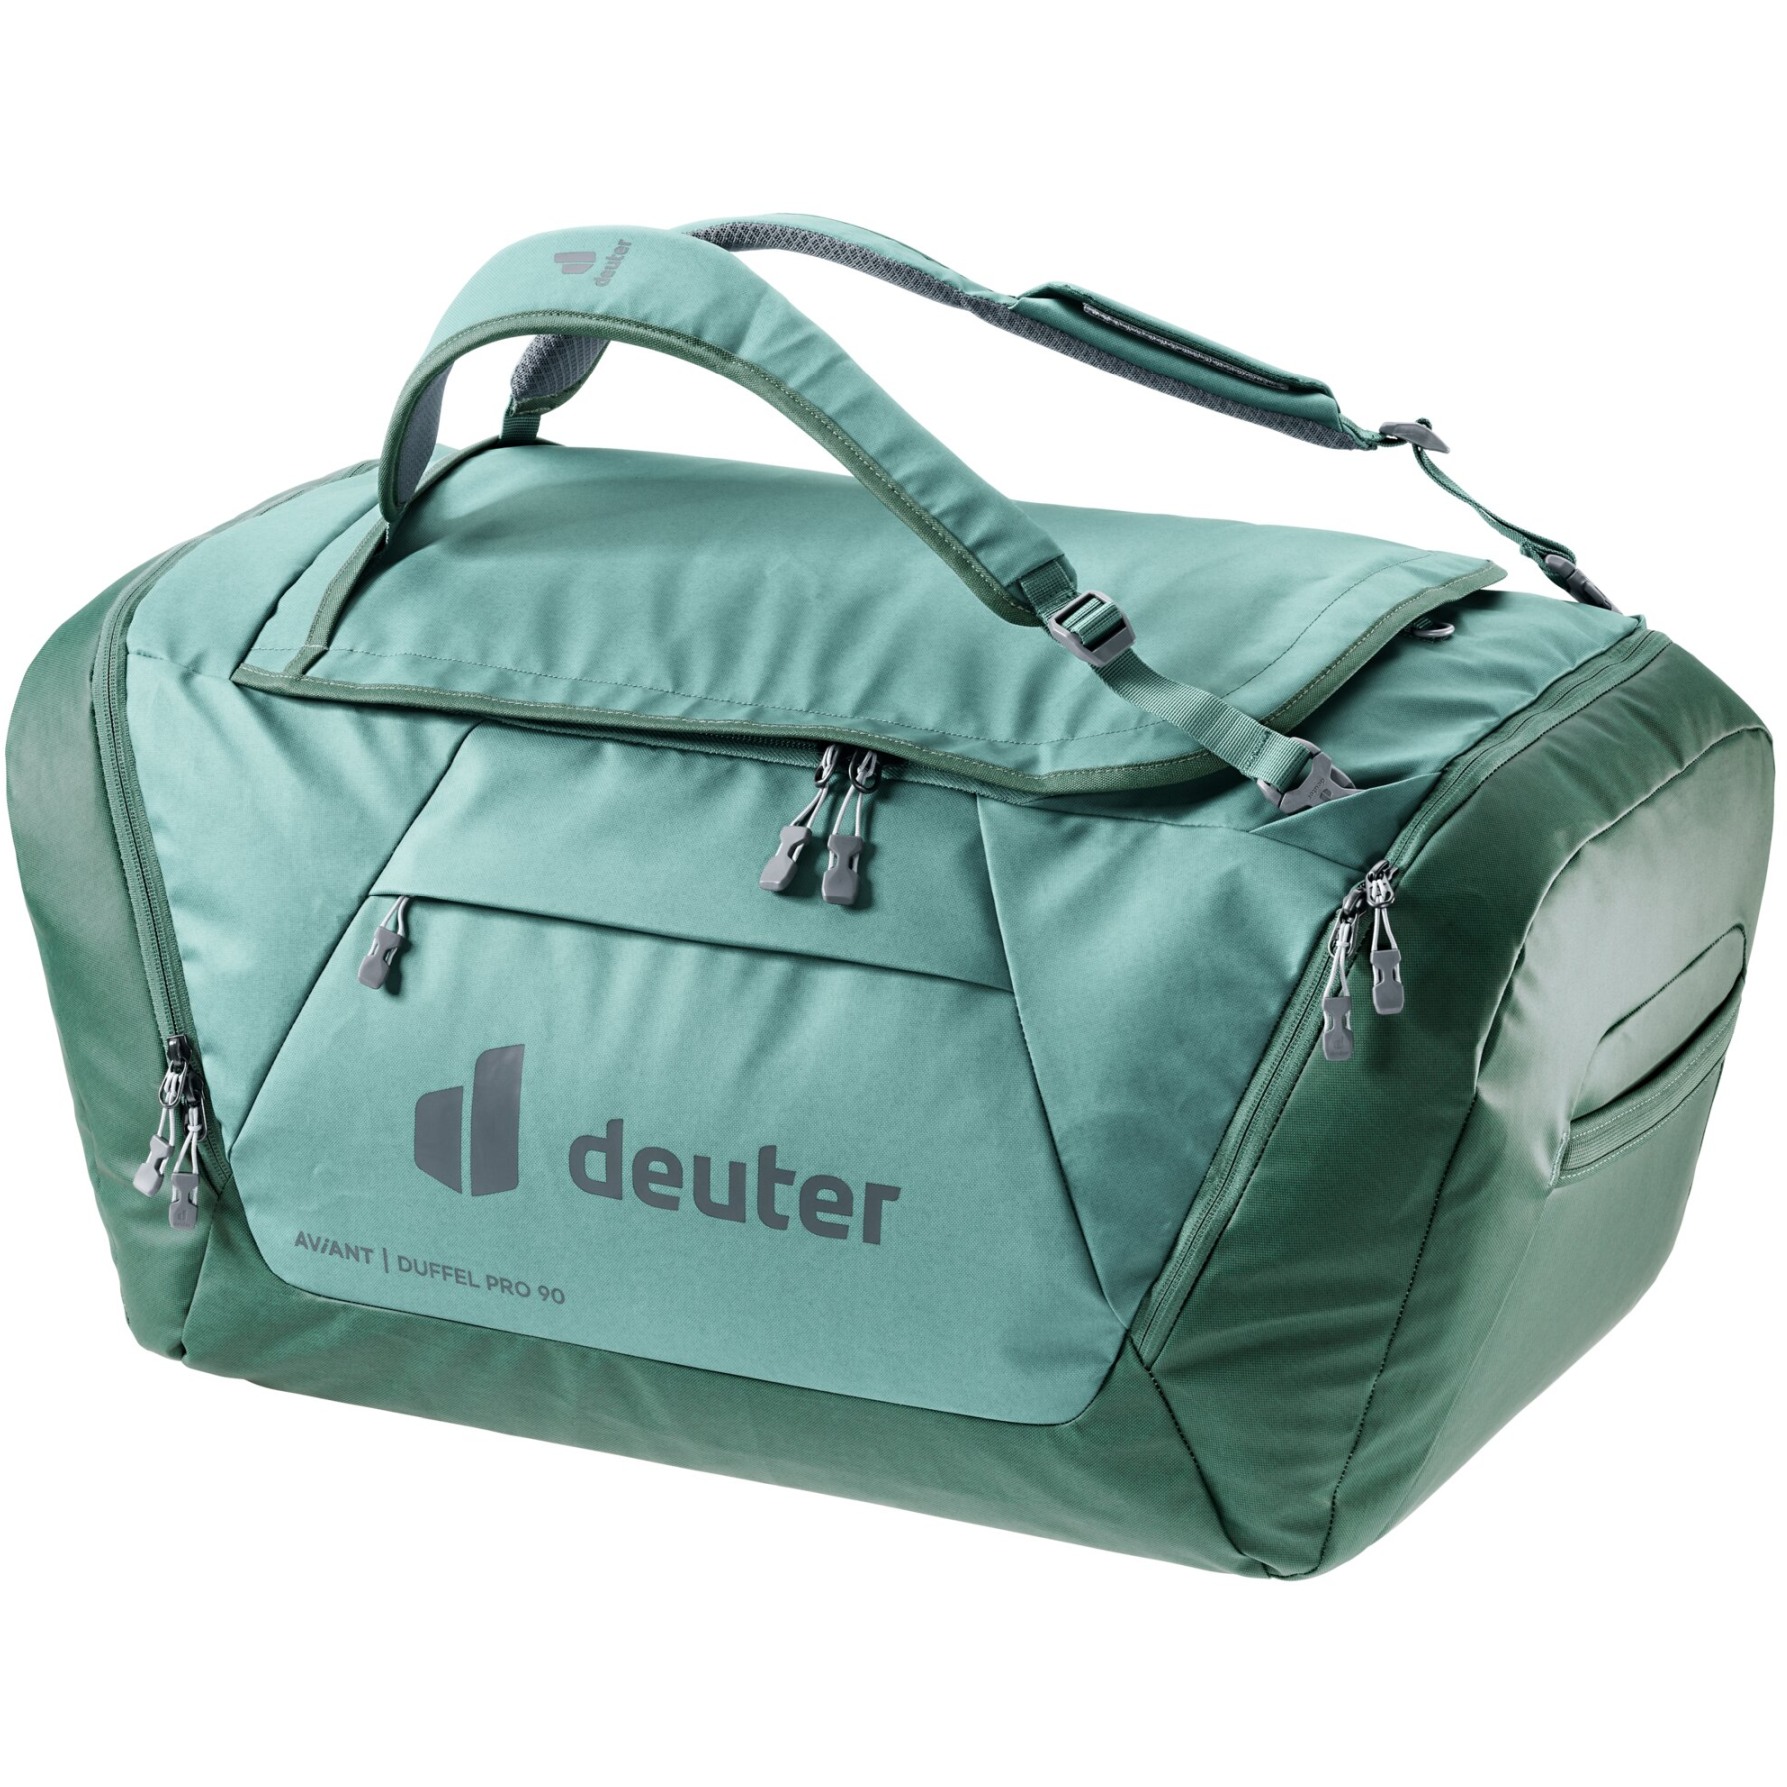 Productfoto van Deuter AViANT Duffel Pro 90 Sporttas - jade-seagreen